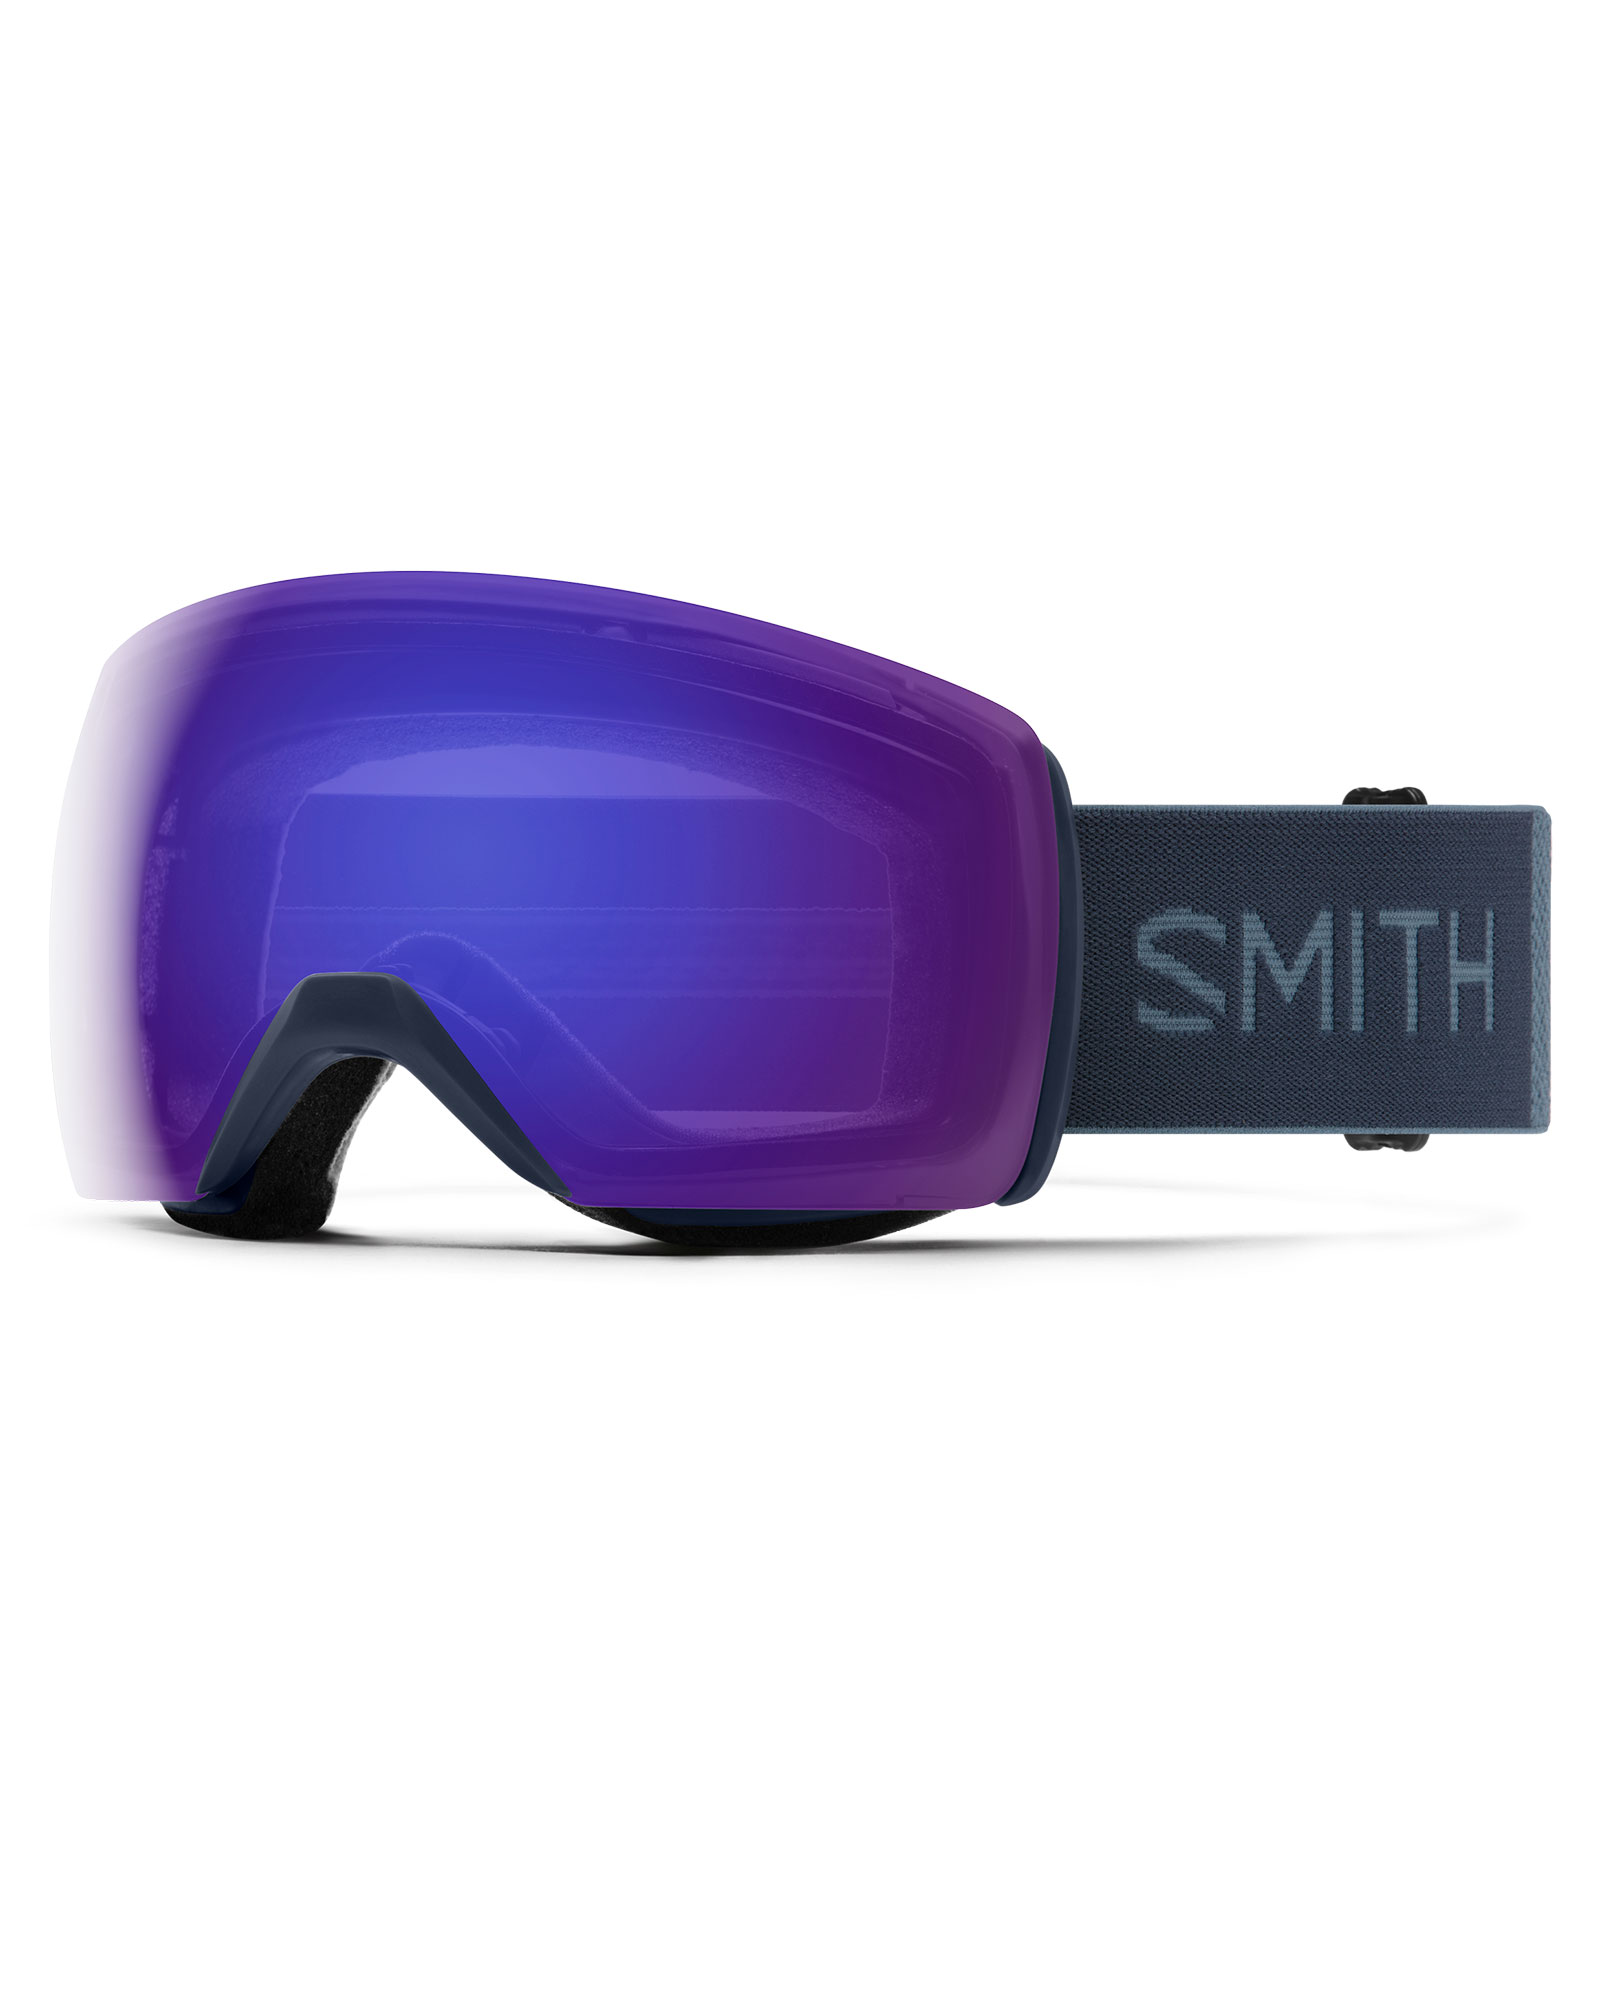 Smith Skyline Xl French Navy / Chromapop Everyday Violet Mirror Goggles